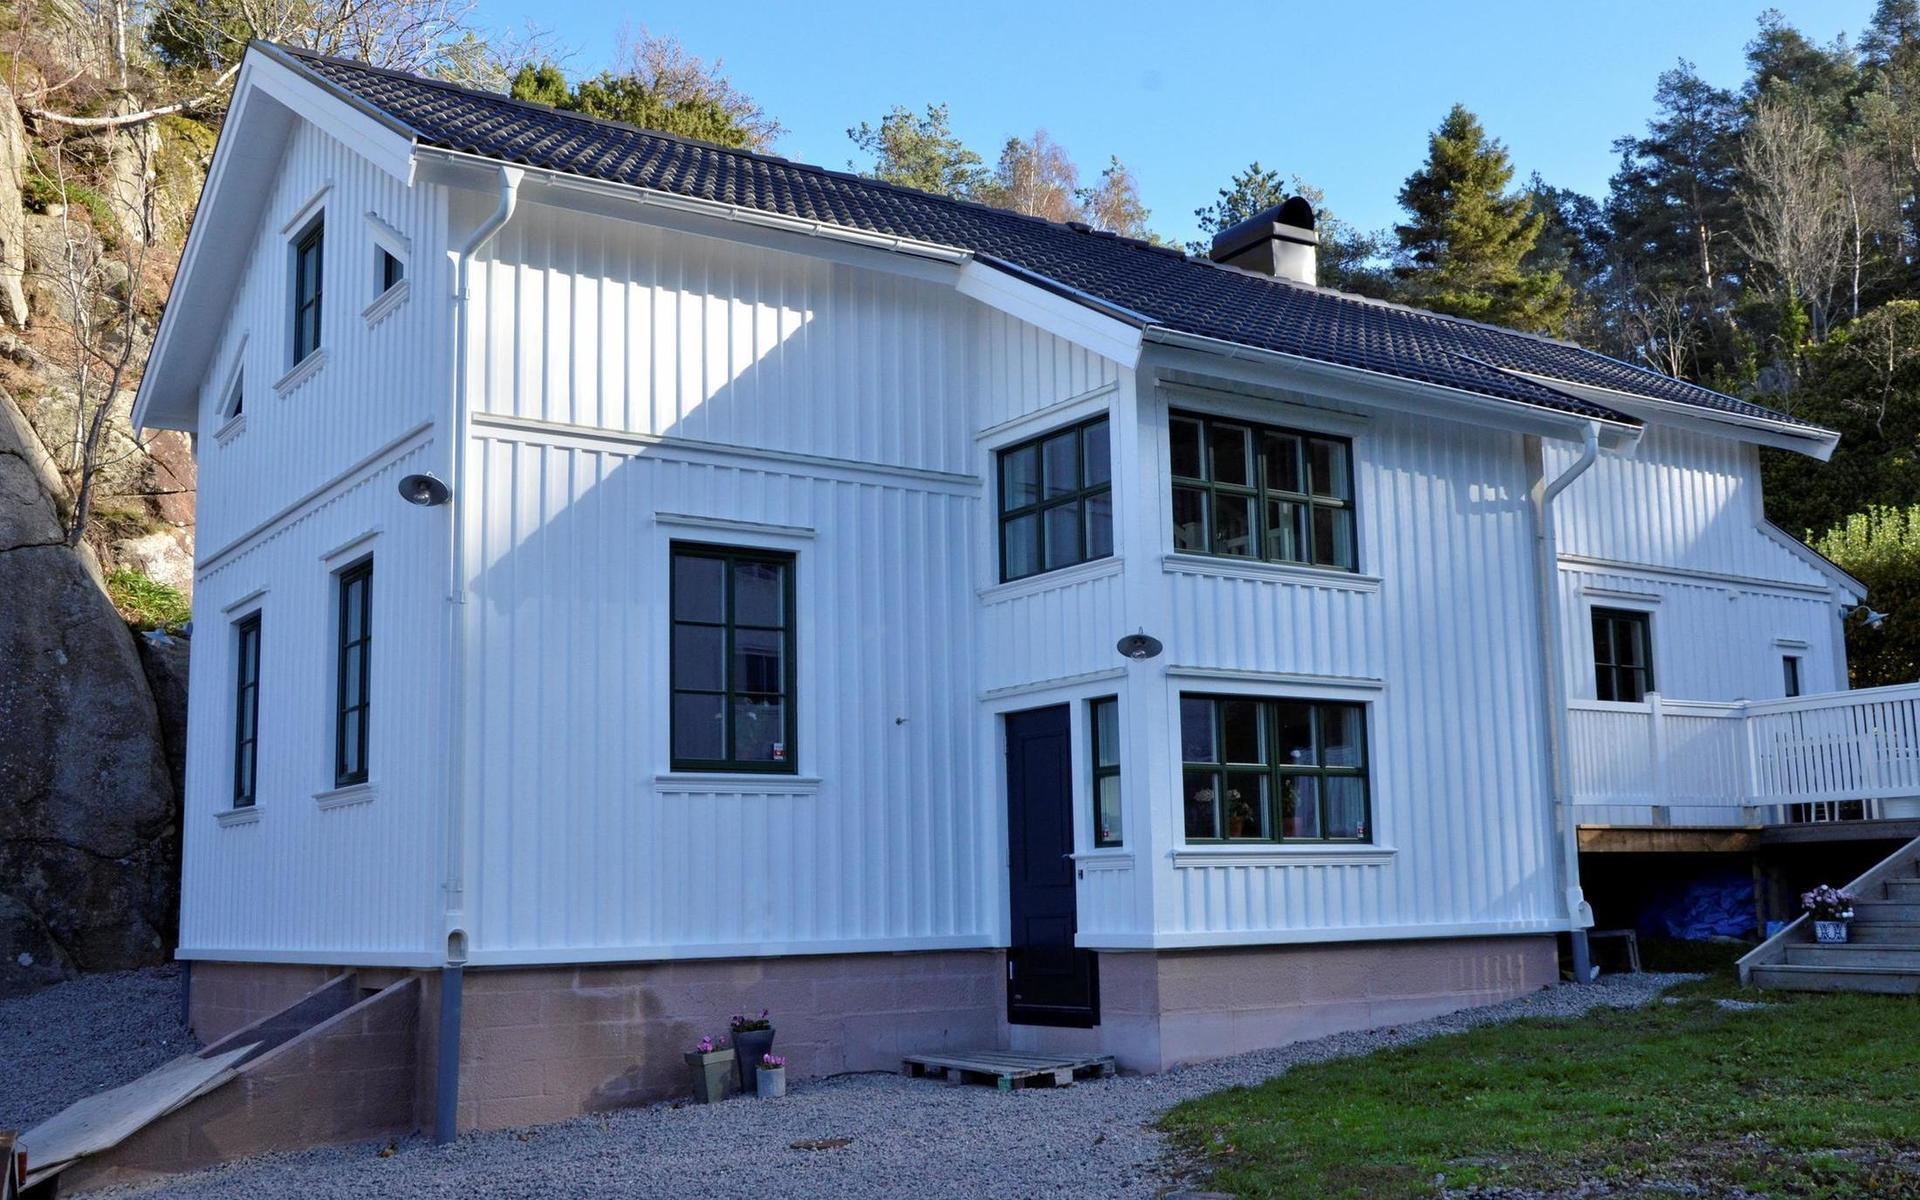 Tureborg 1:108 var ett av de övriga nominerade husen.